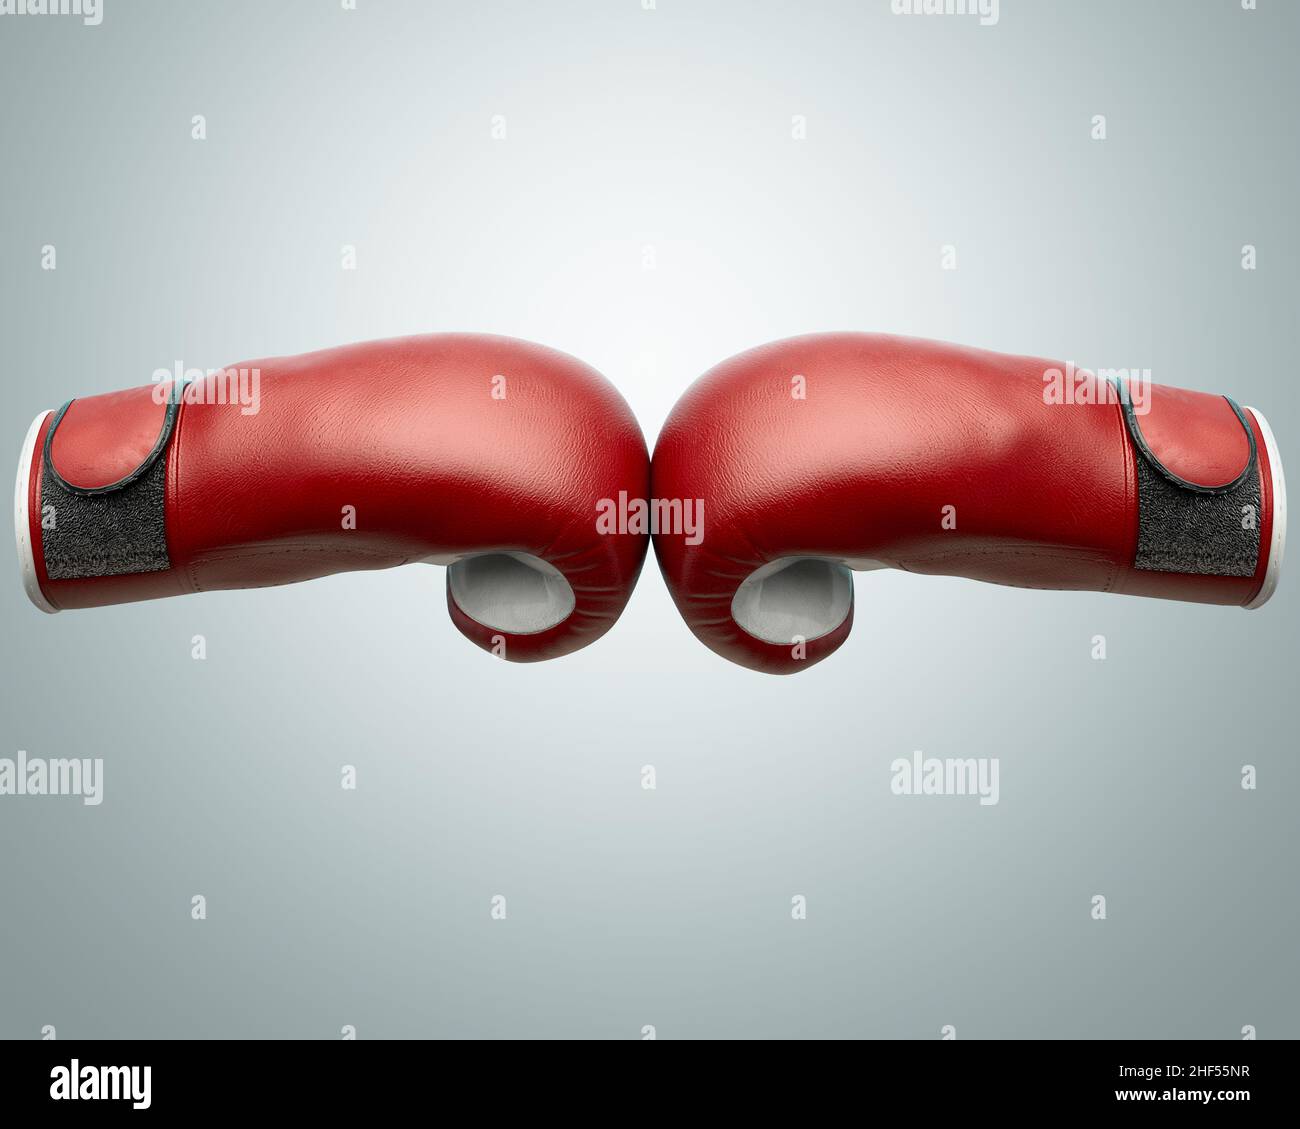 Un concetto che mostra due guanti da boxe opposti rossi e bianchi che toccano al centro di uno sfondo isolato - 3D rendering Foto Stock